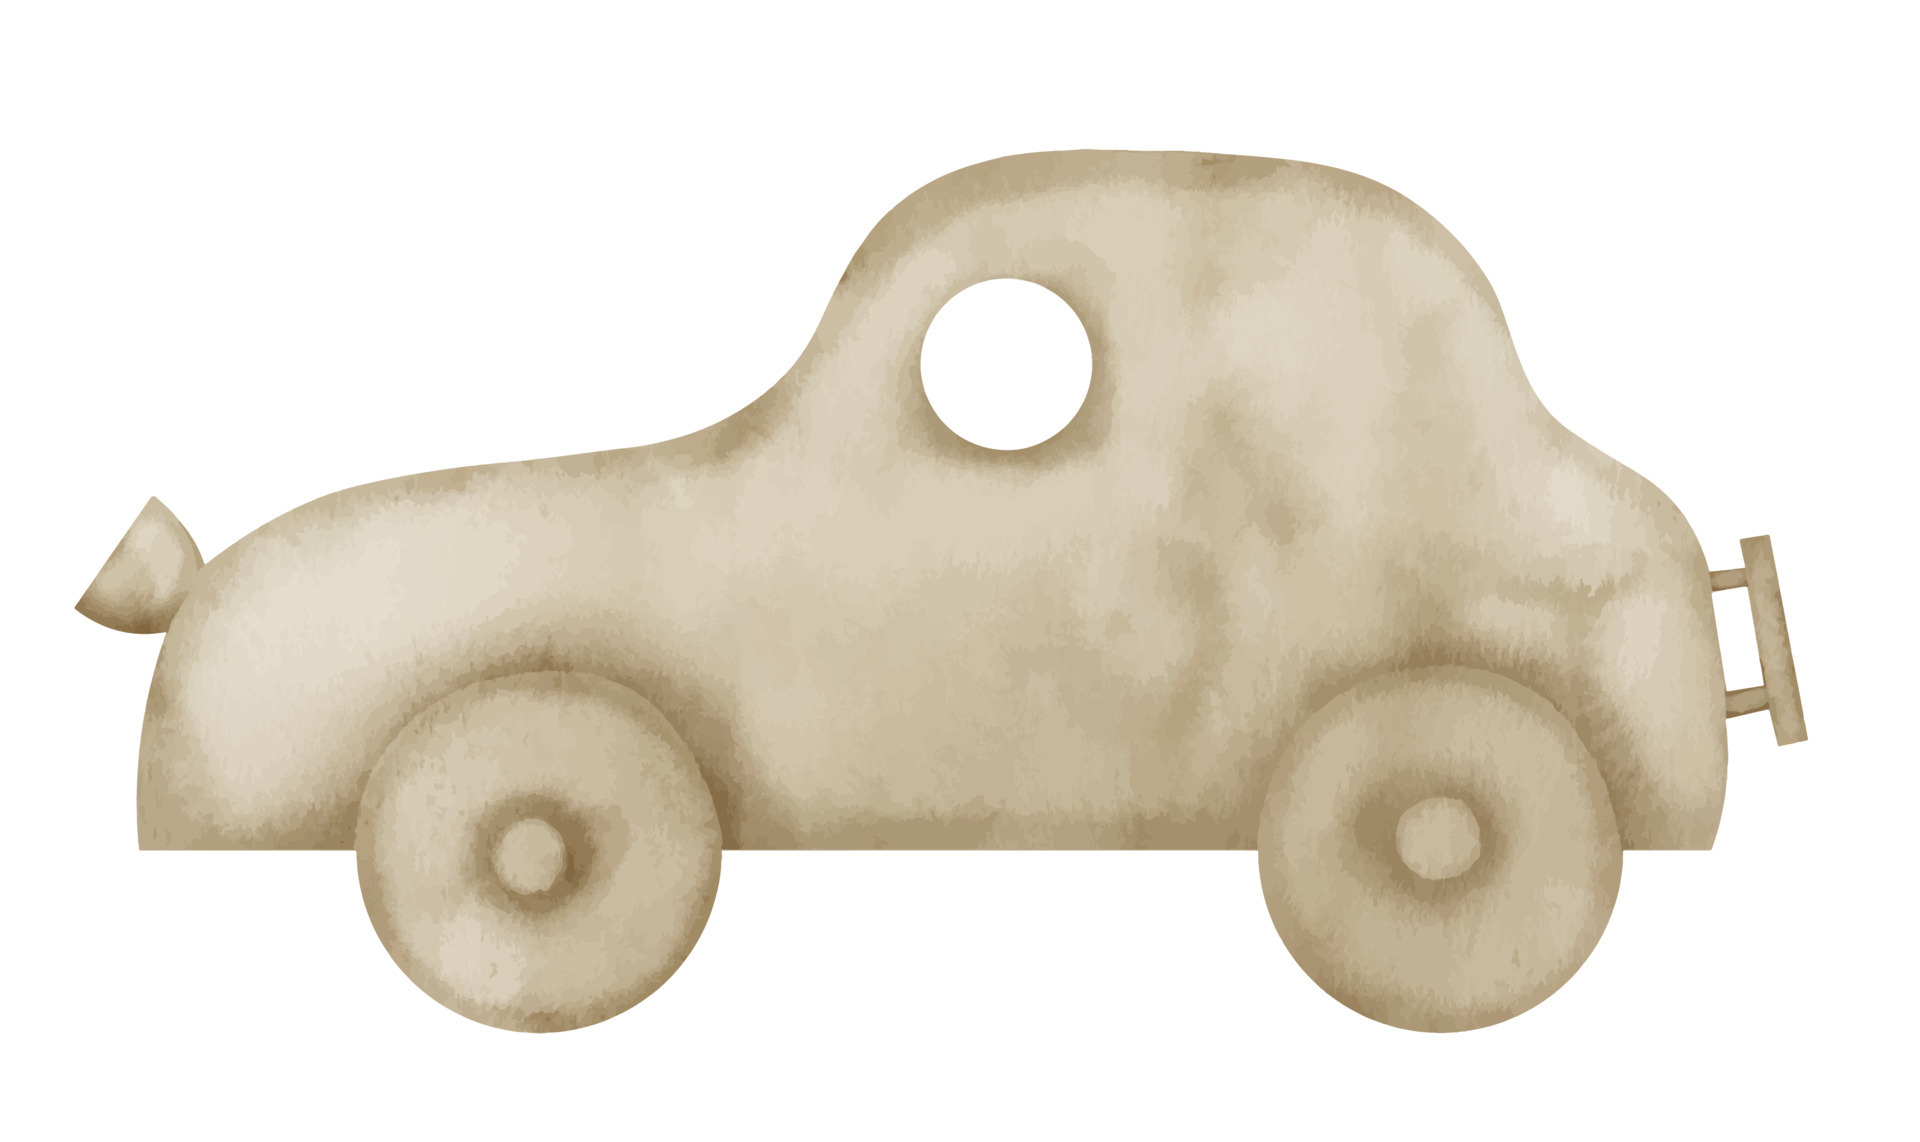 carro de brinquedo de madeira. ilustração desenhada à mão em